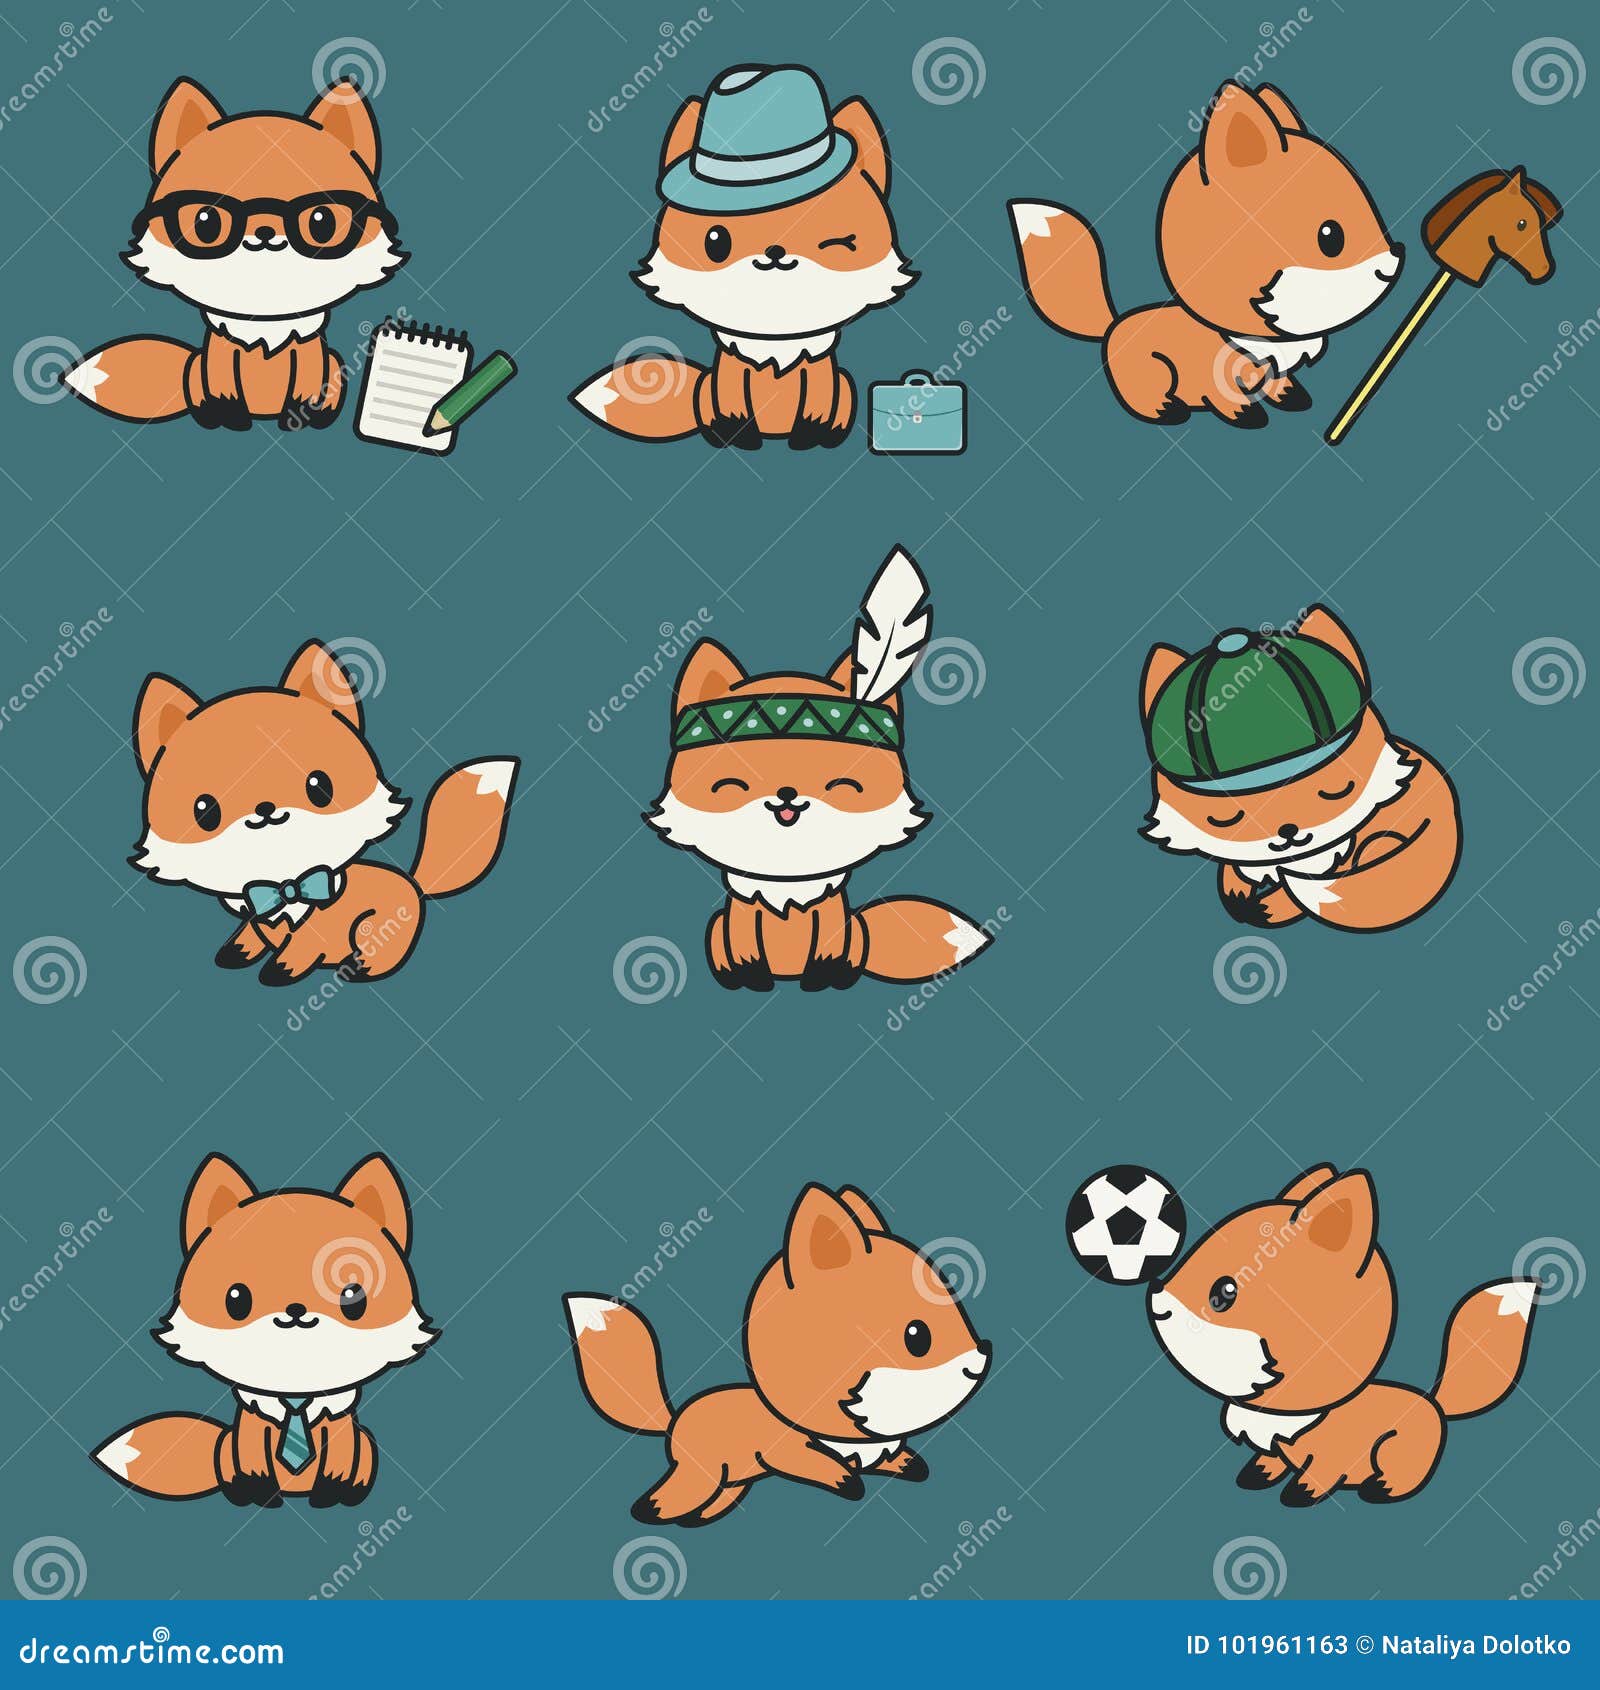 cute kawaii foxes